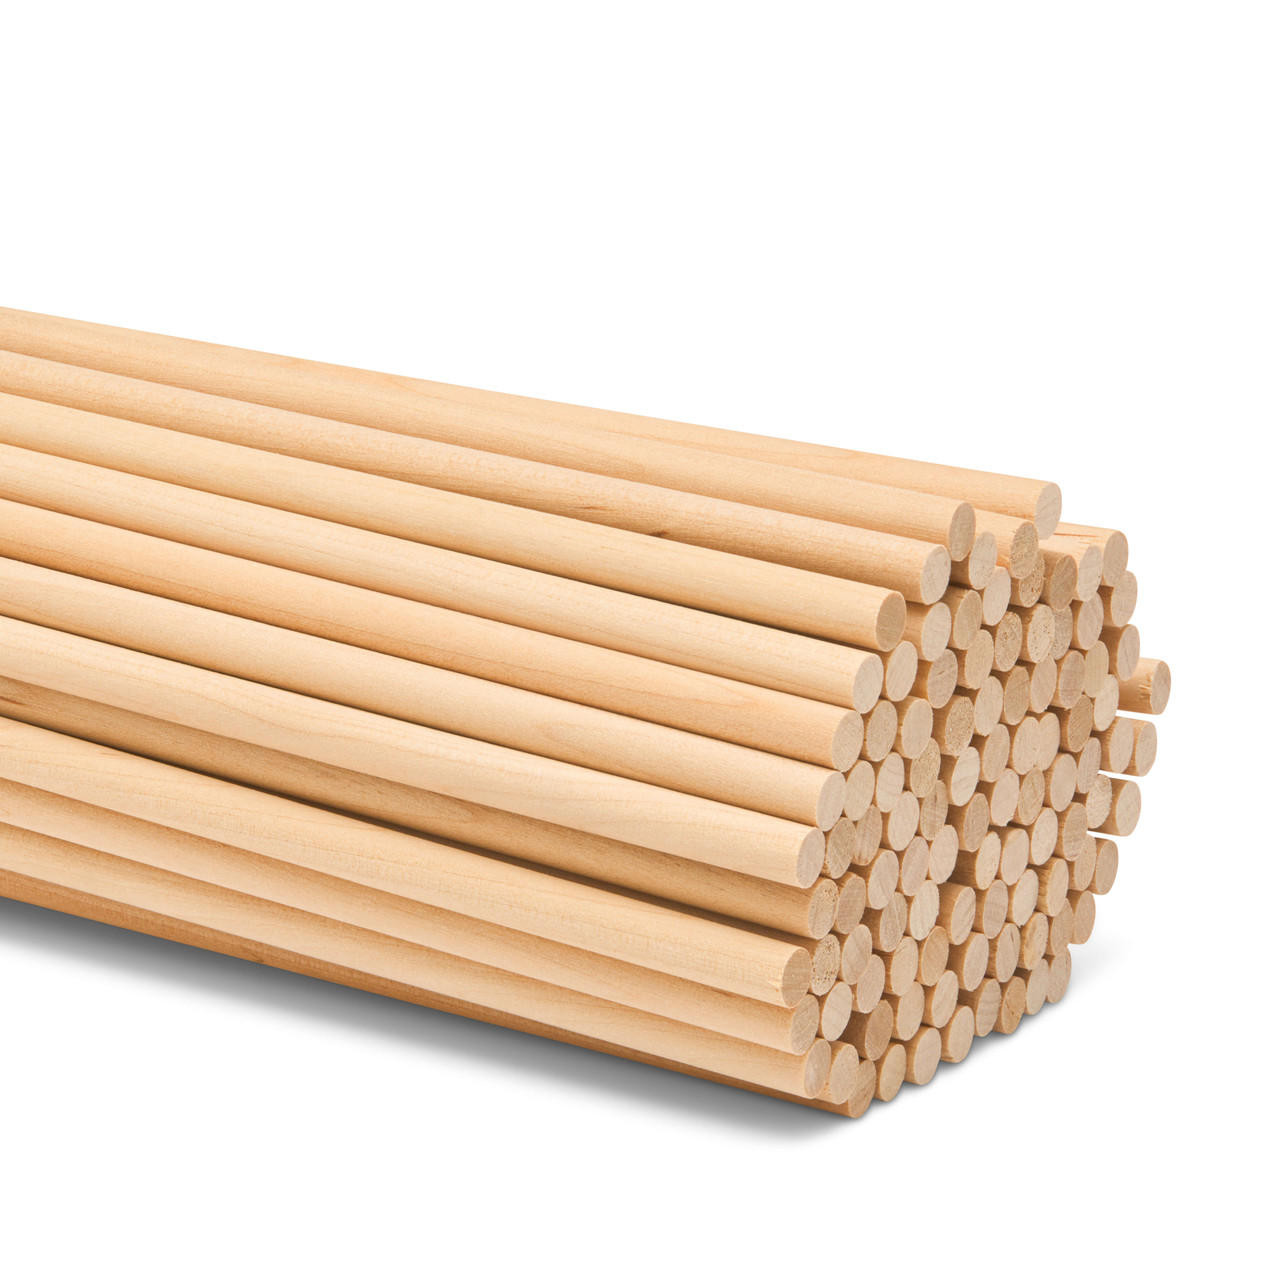 Wood Dowel Rods 1/4 x 24 Hardwood Dowels